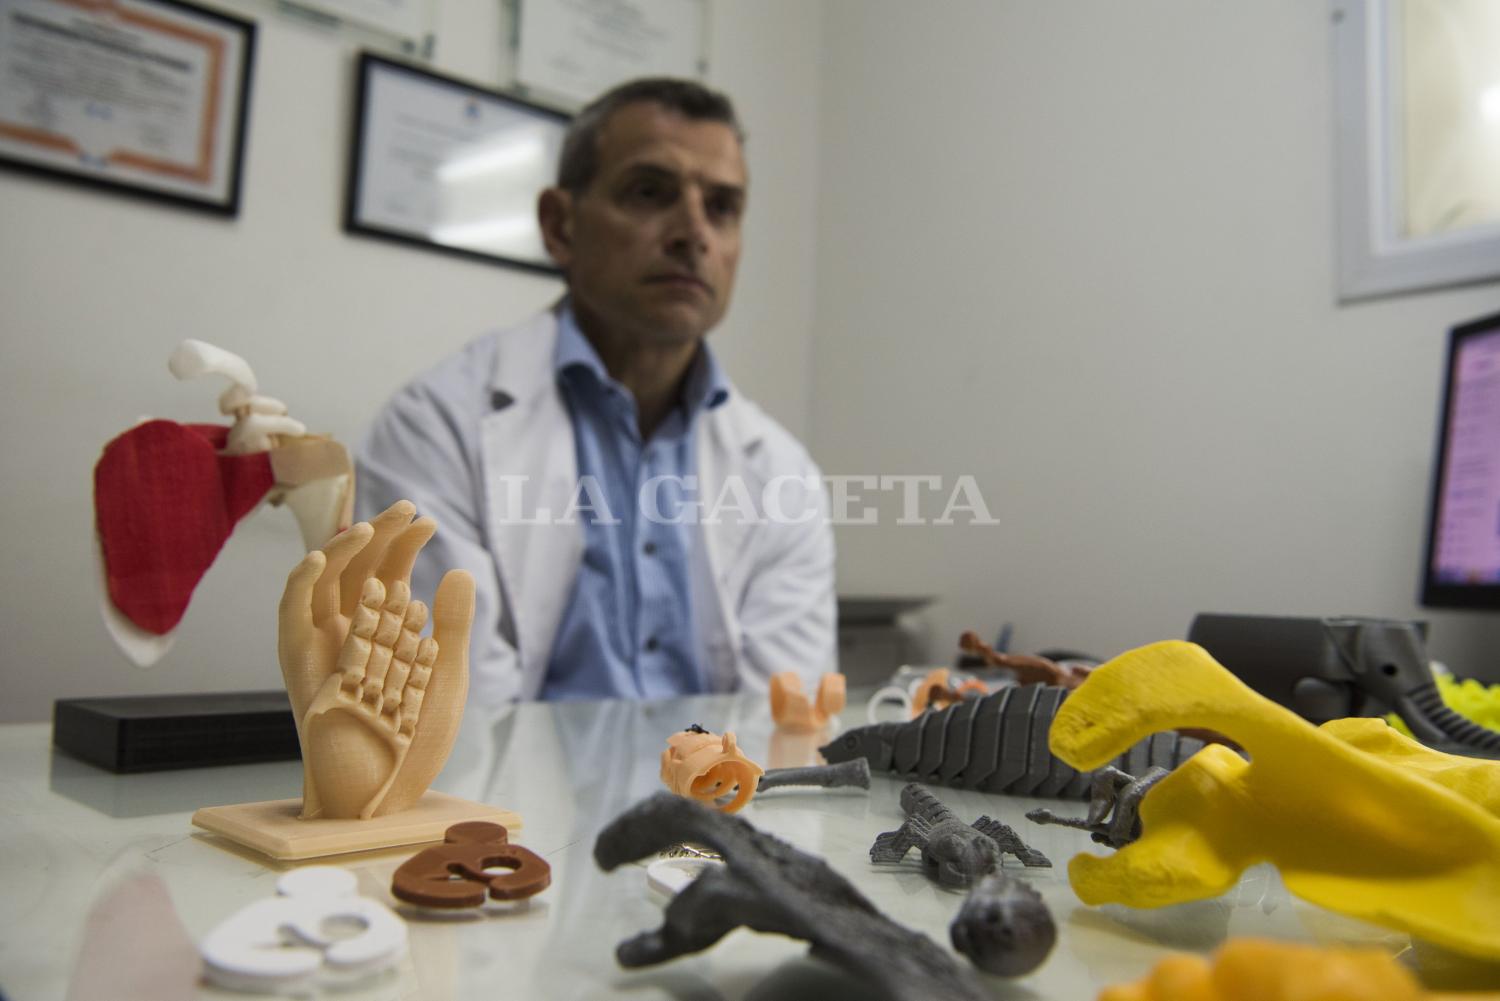 Trabajar sí, pero también jugar. Brahim usa la impresión 3D no solamente en la medicina, sino también para crear juguetes y todo tipo de objetos. Es como tener una fábrica en tu casa, dice el médico.